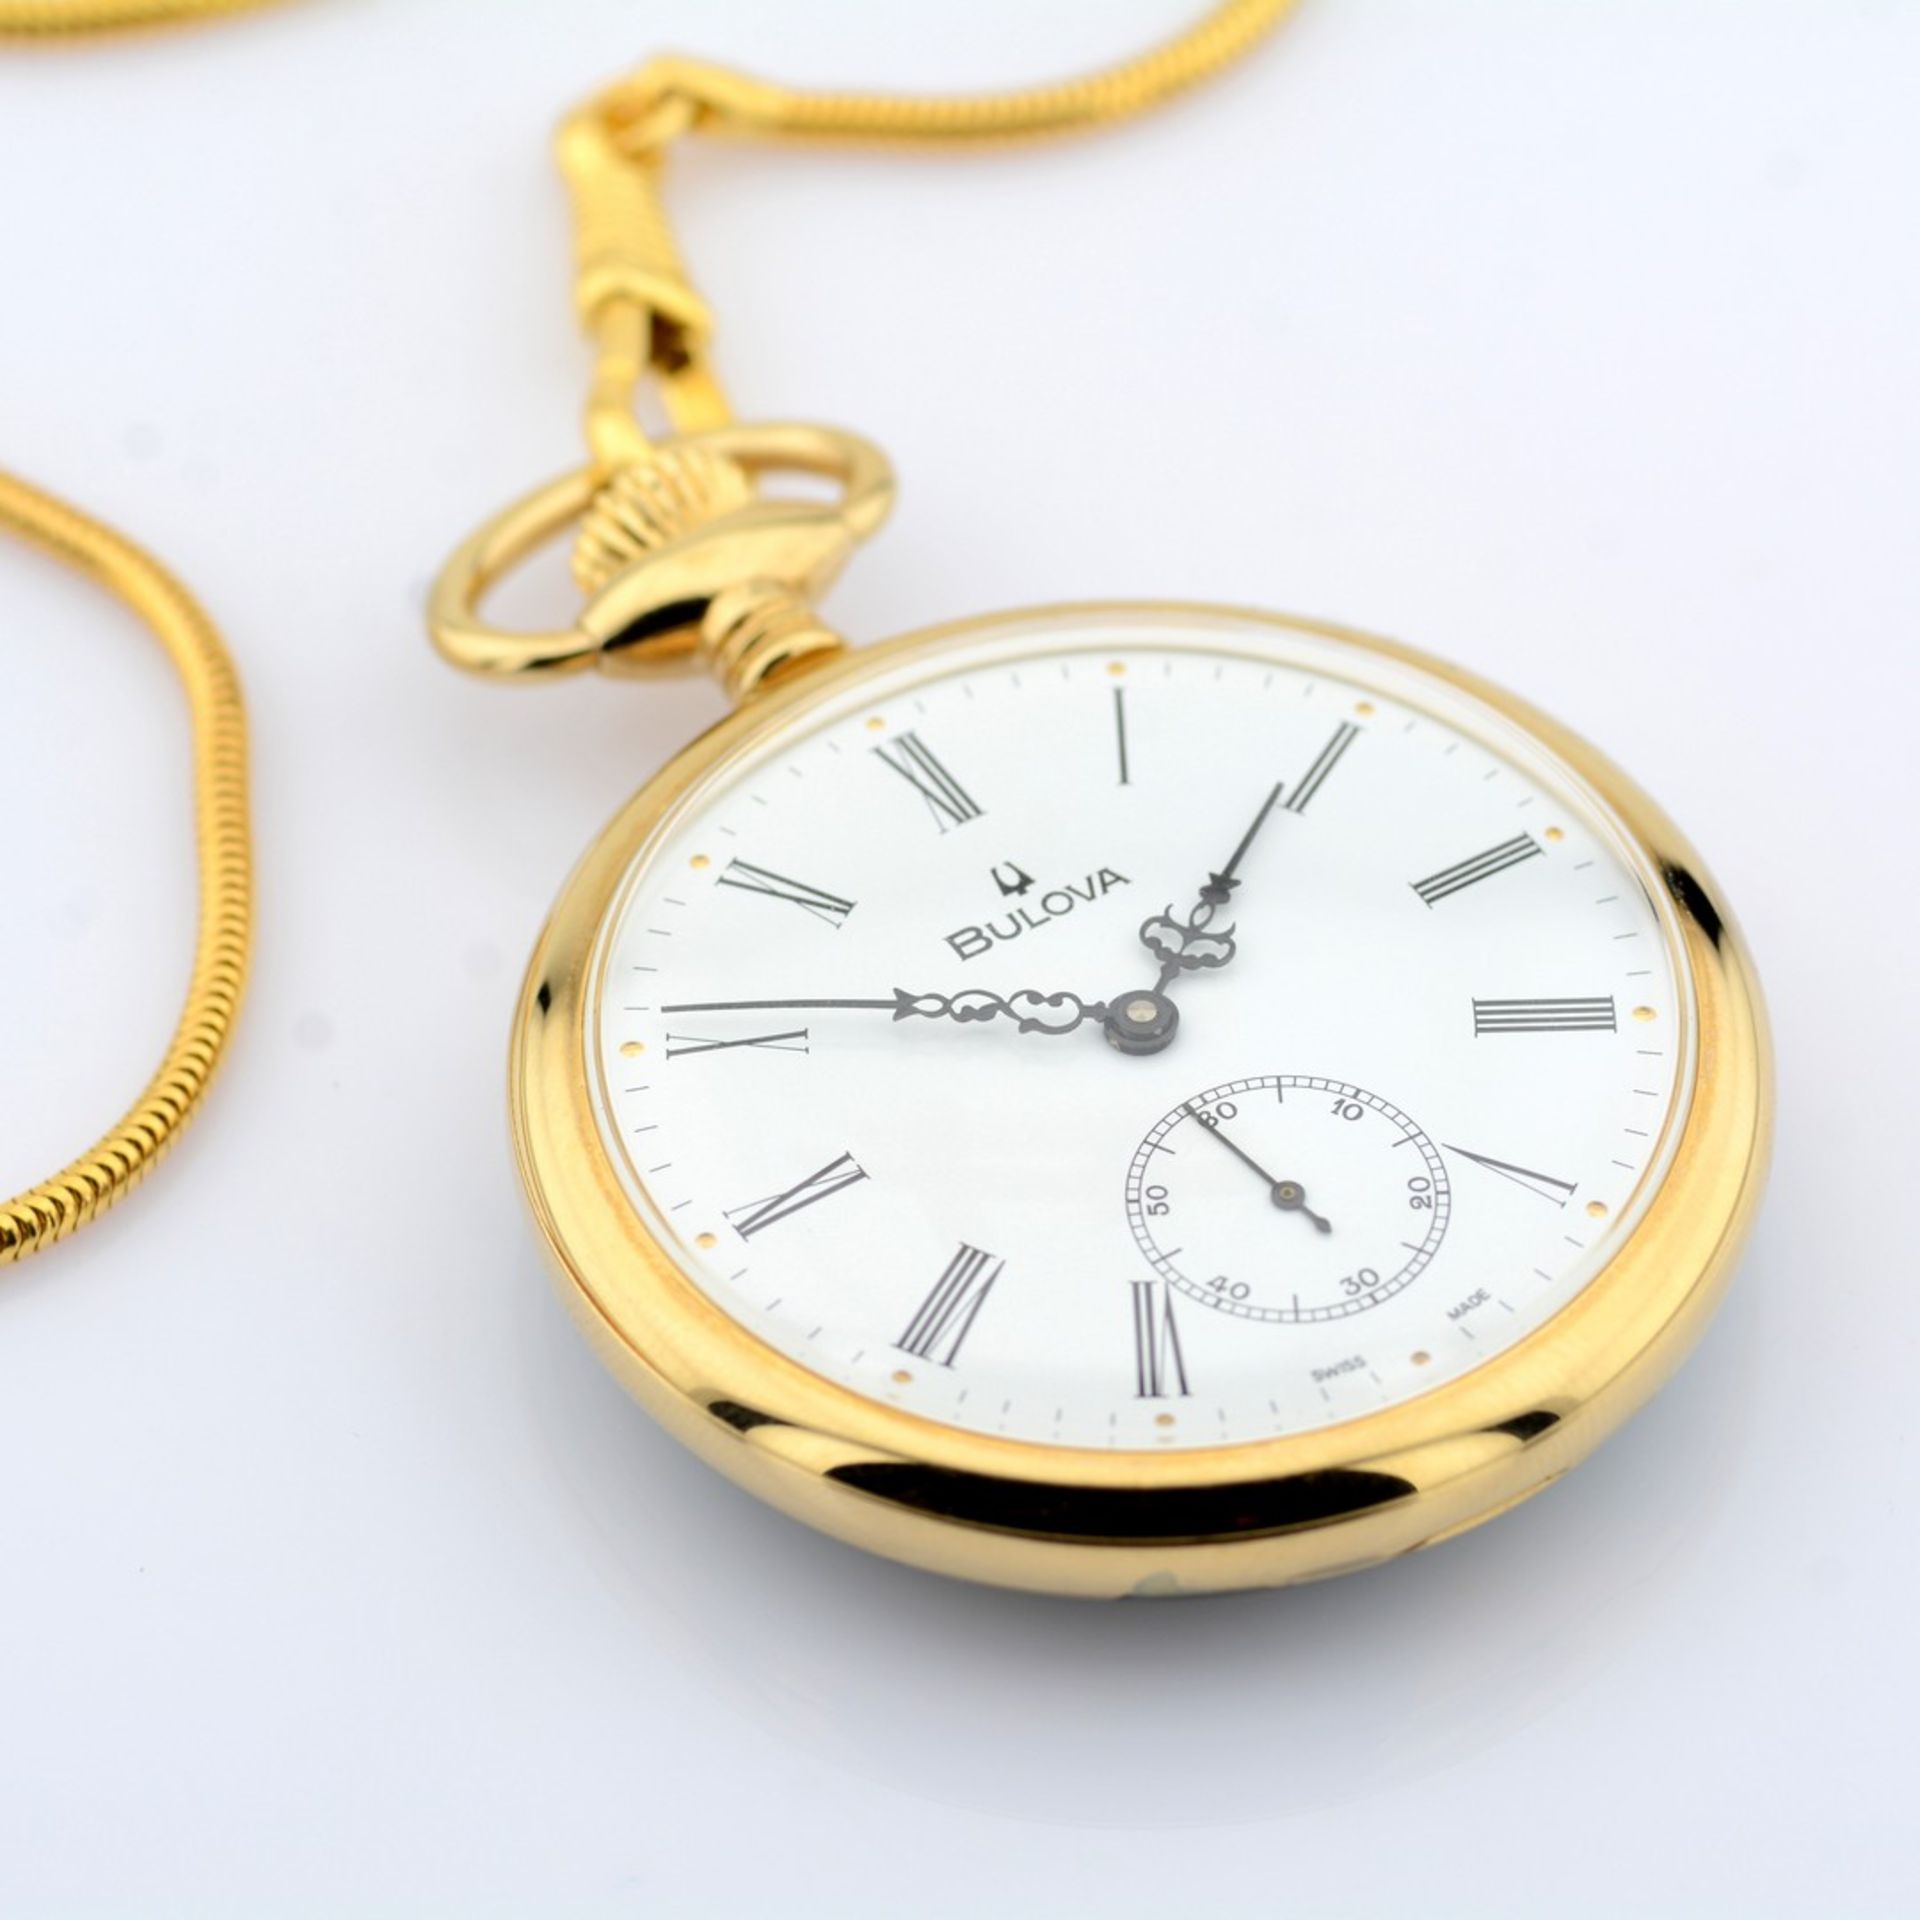 Bulova / Pocket Watch - Gentlmen's Gold/Steel Wrist Watch - Image 3 of 8